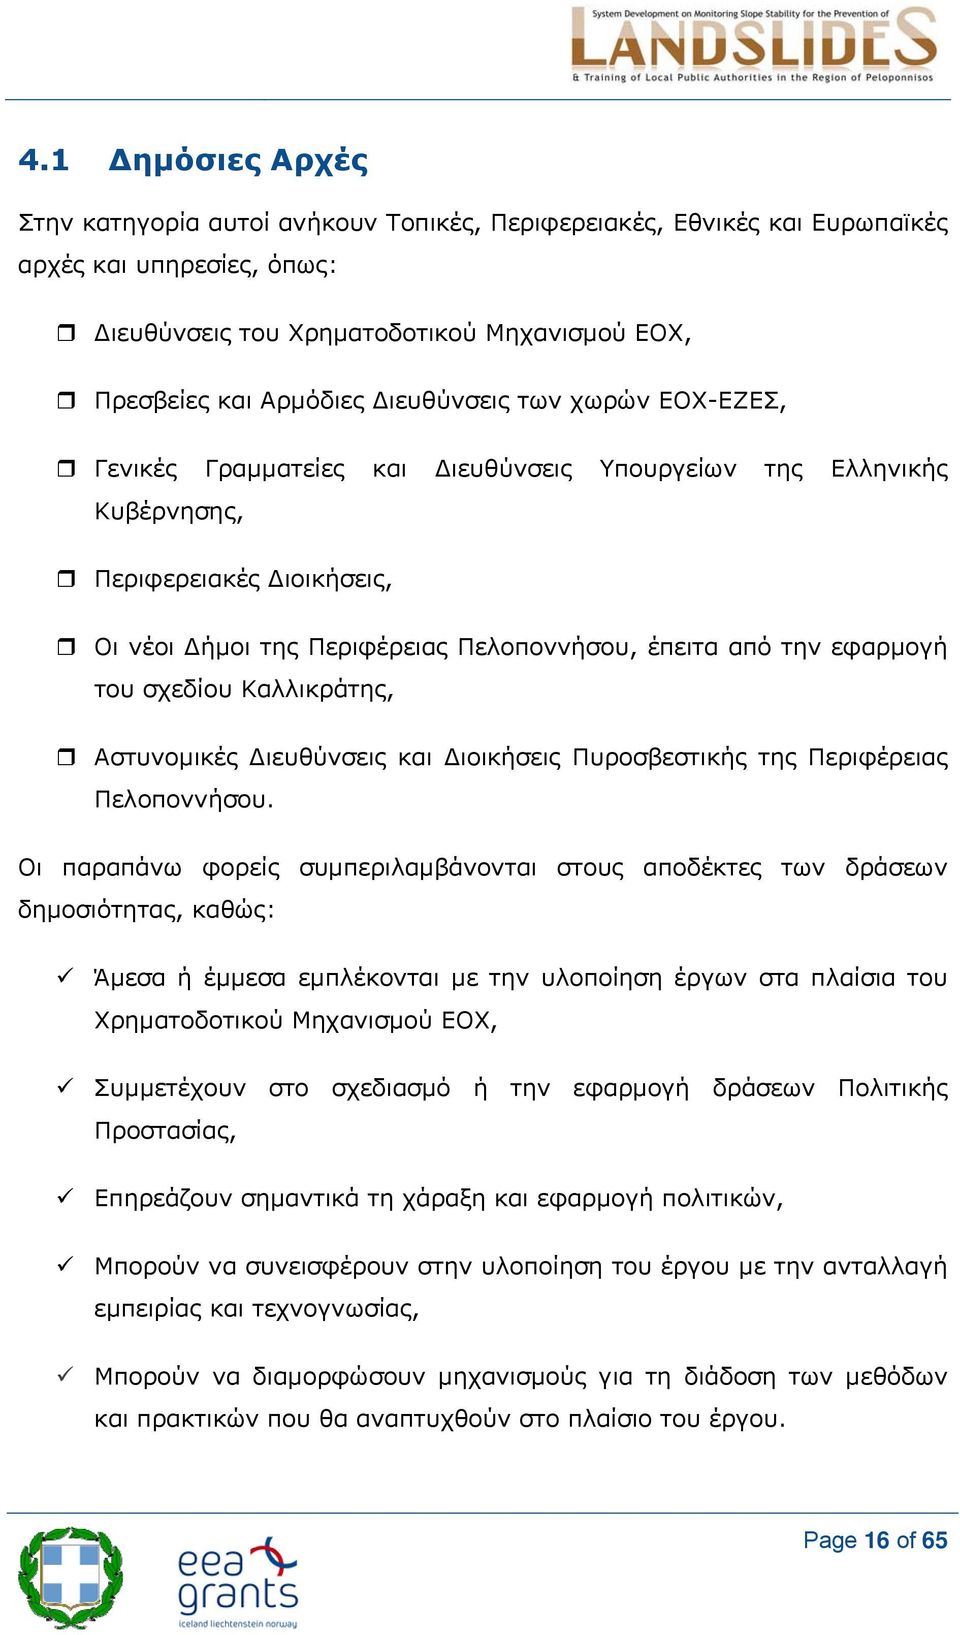 σχεδίου Καλλικράτης, Αστυνομικές ιευθύνσεις και ιοικήσεις Πυροσβεστικής της Περιφέρειας Πελοποννήσου.